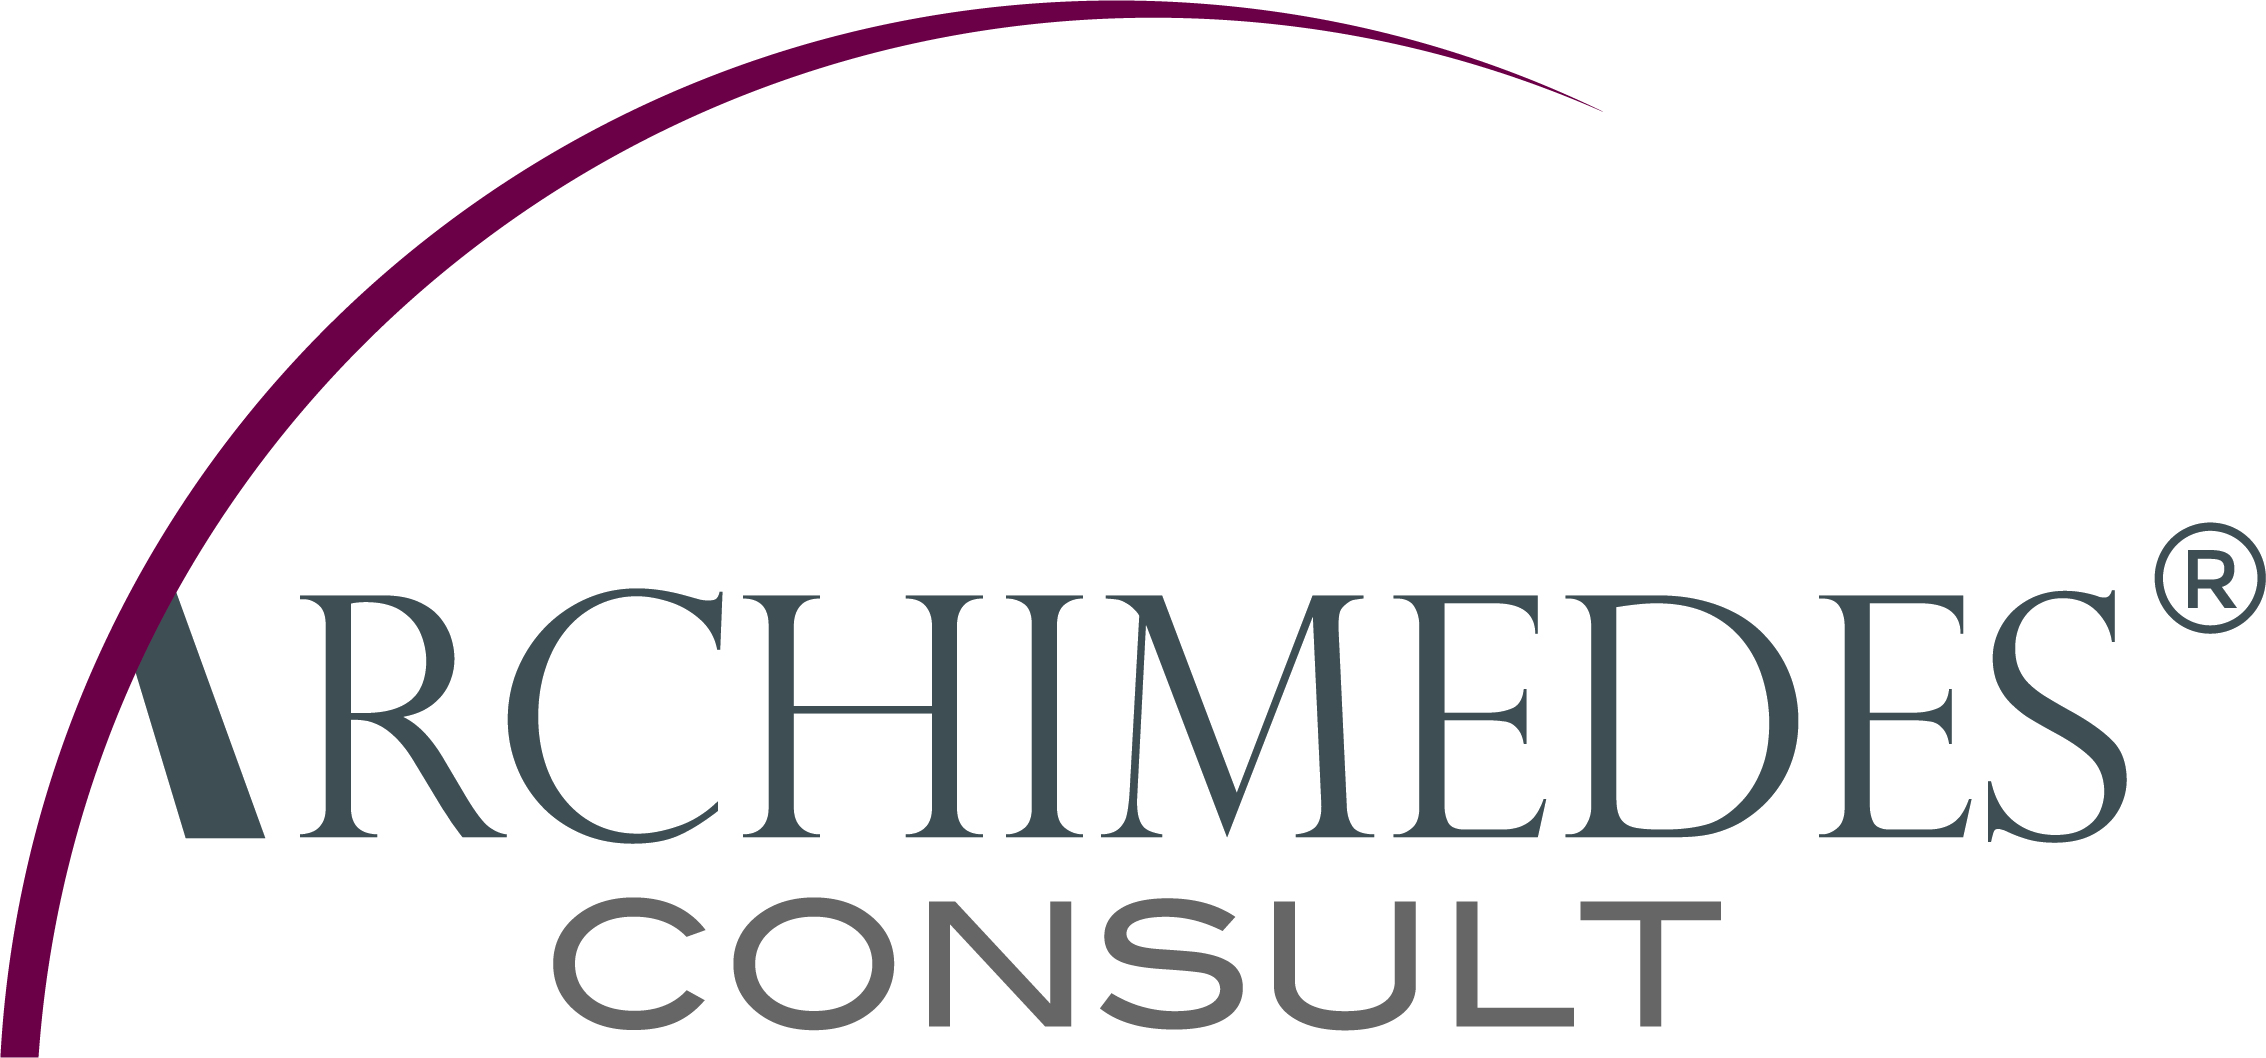 Archimedes-Consult GmbH - Finanzanlagen mit christlichen Werten beraten